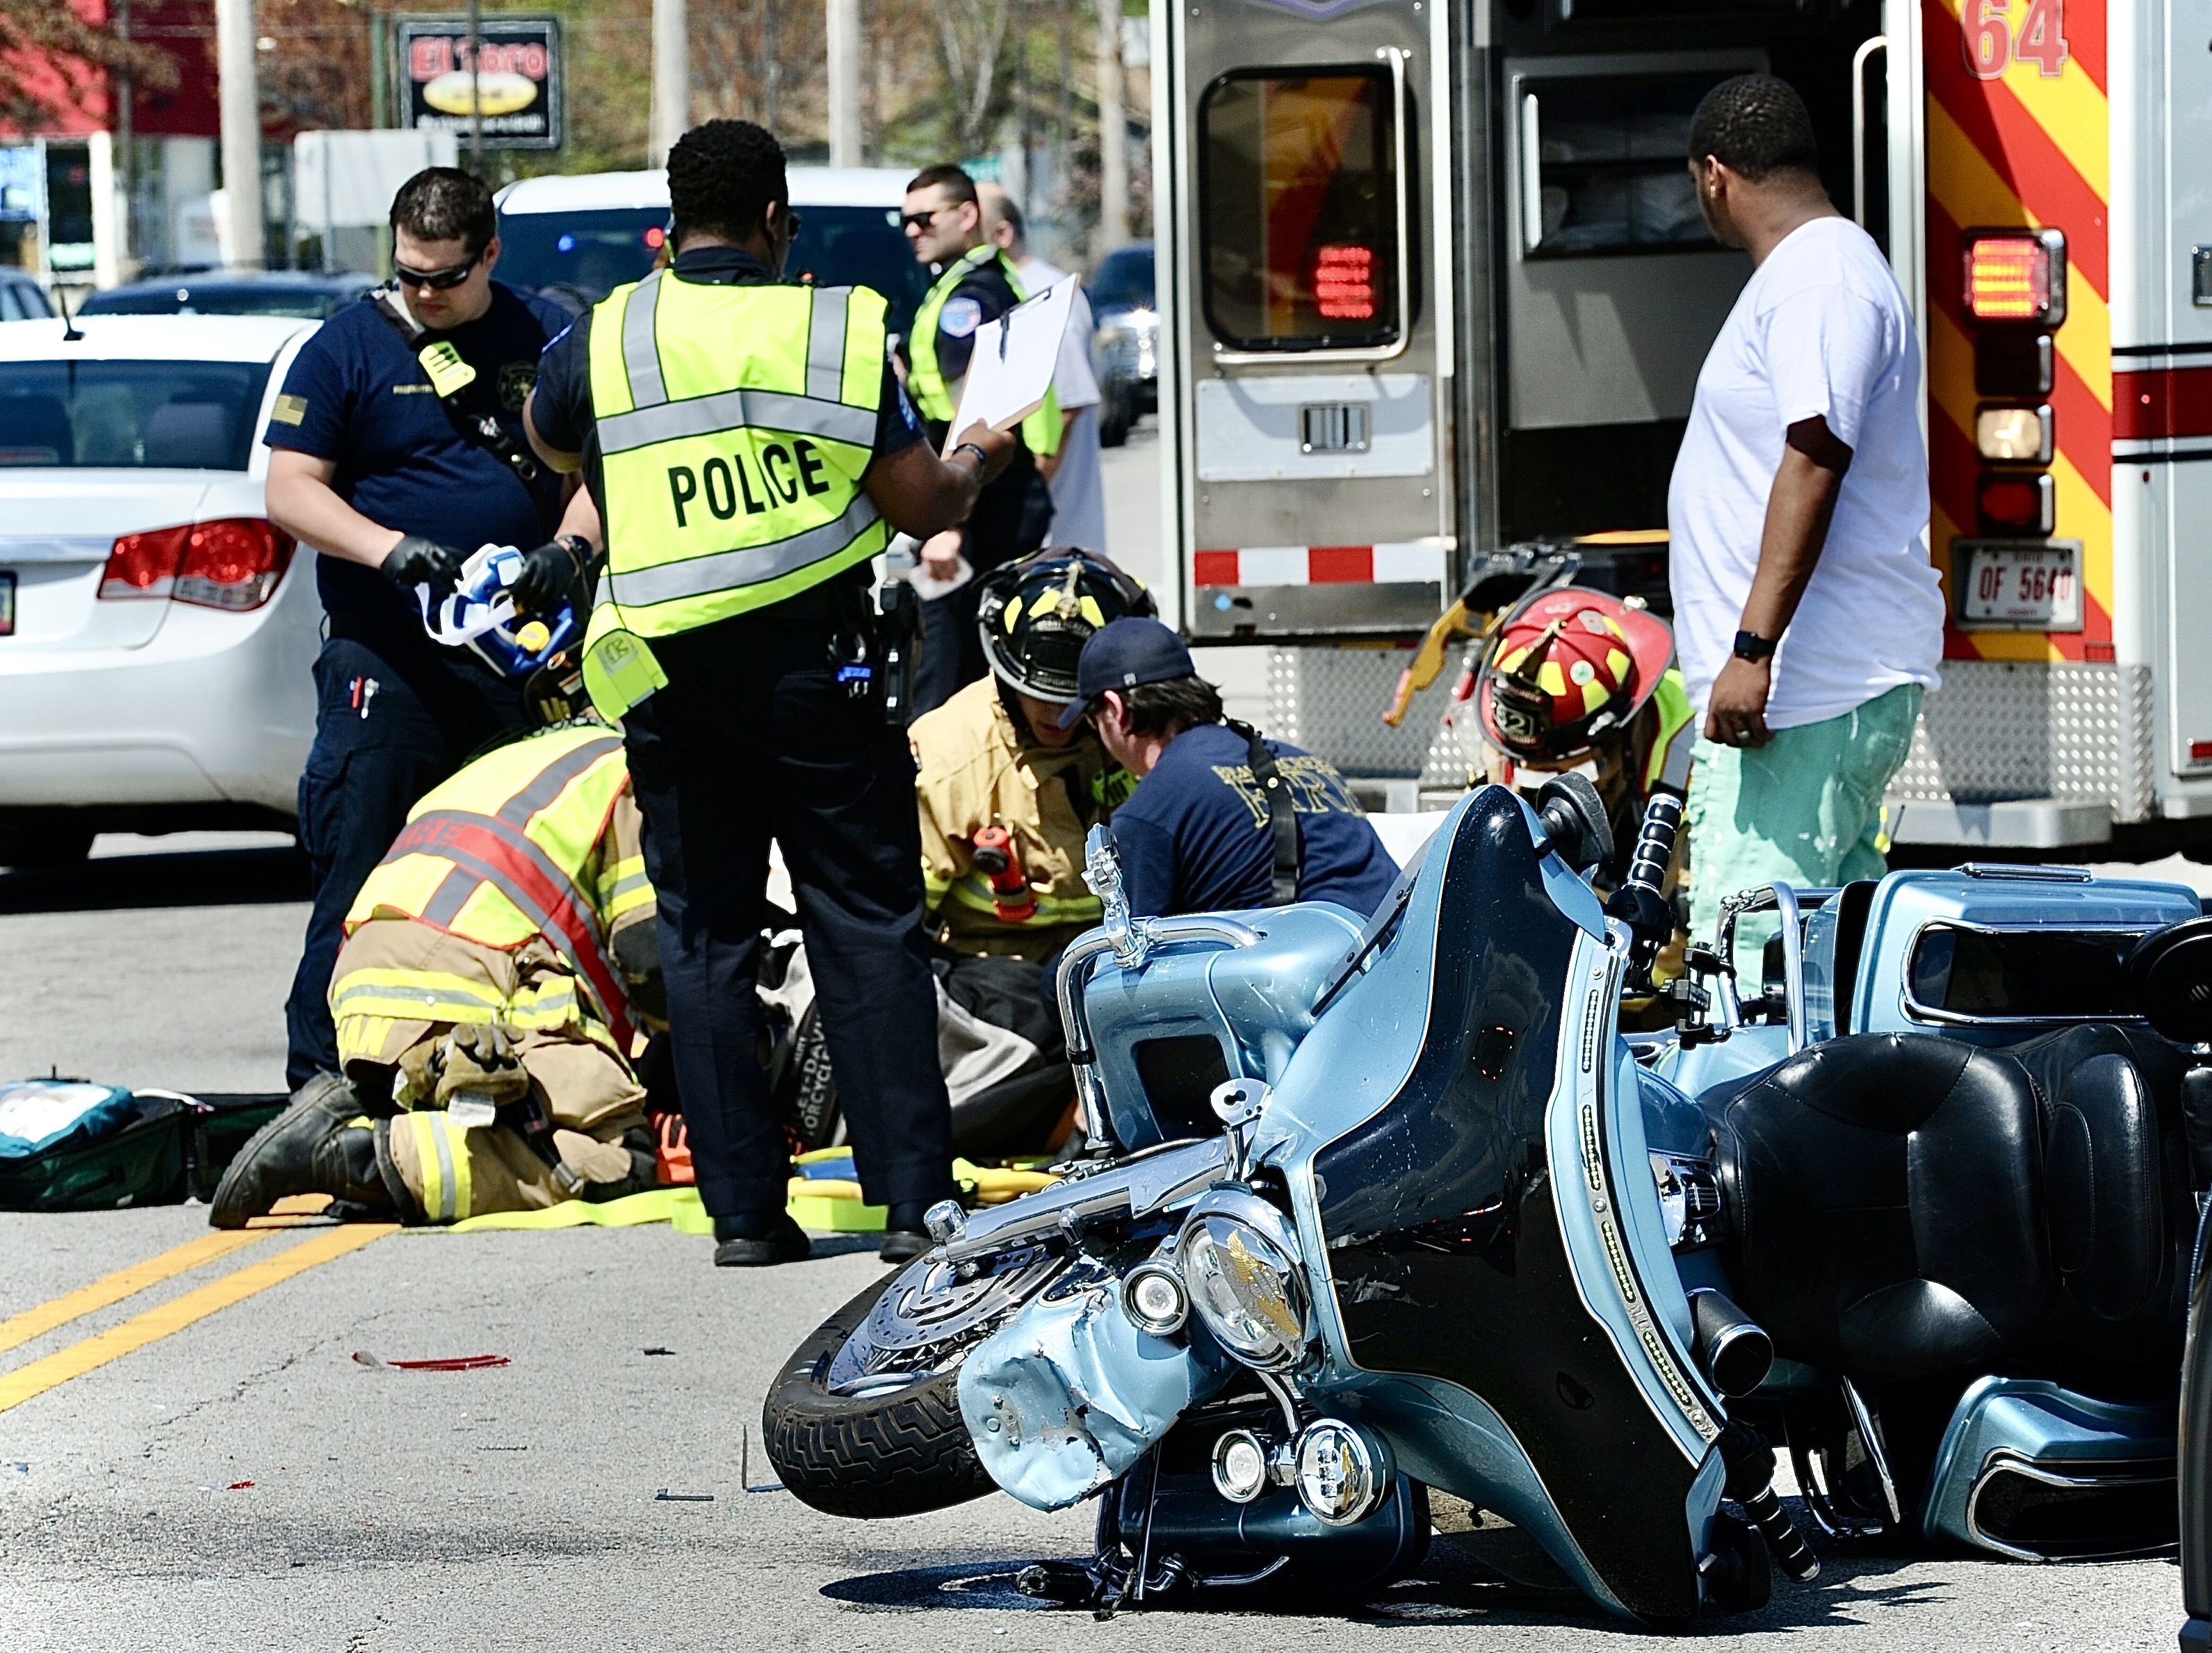 At least 1 injured in motorcycle crash in Beavercreek – Dayton Daily News